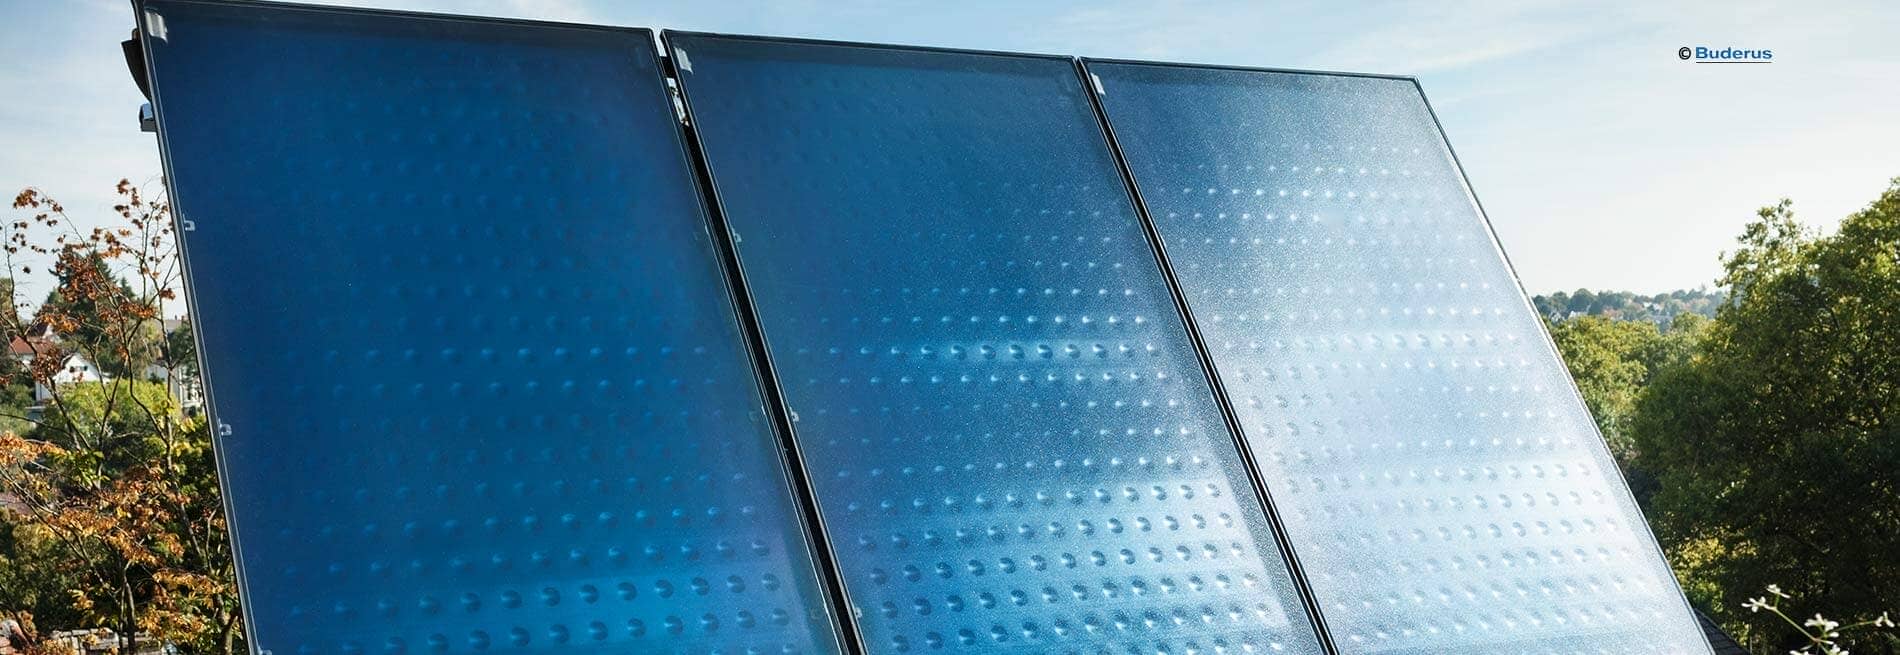 Solarpanels von Buderus: Kollektoren für Solarthermie Gütersloh